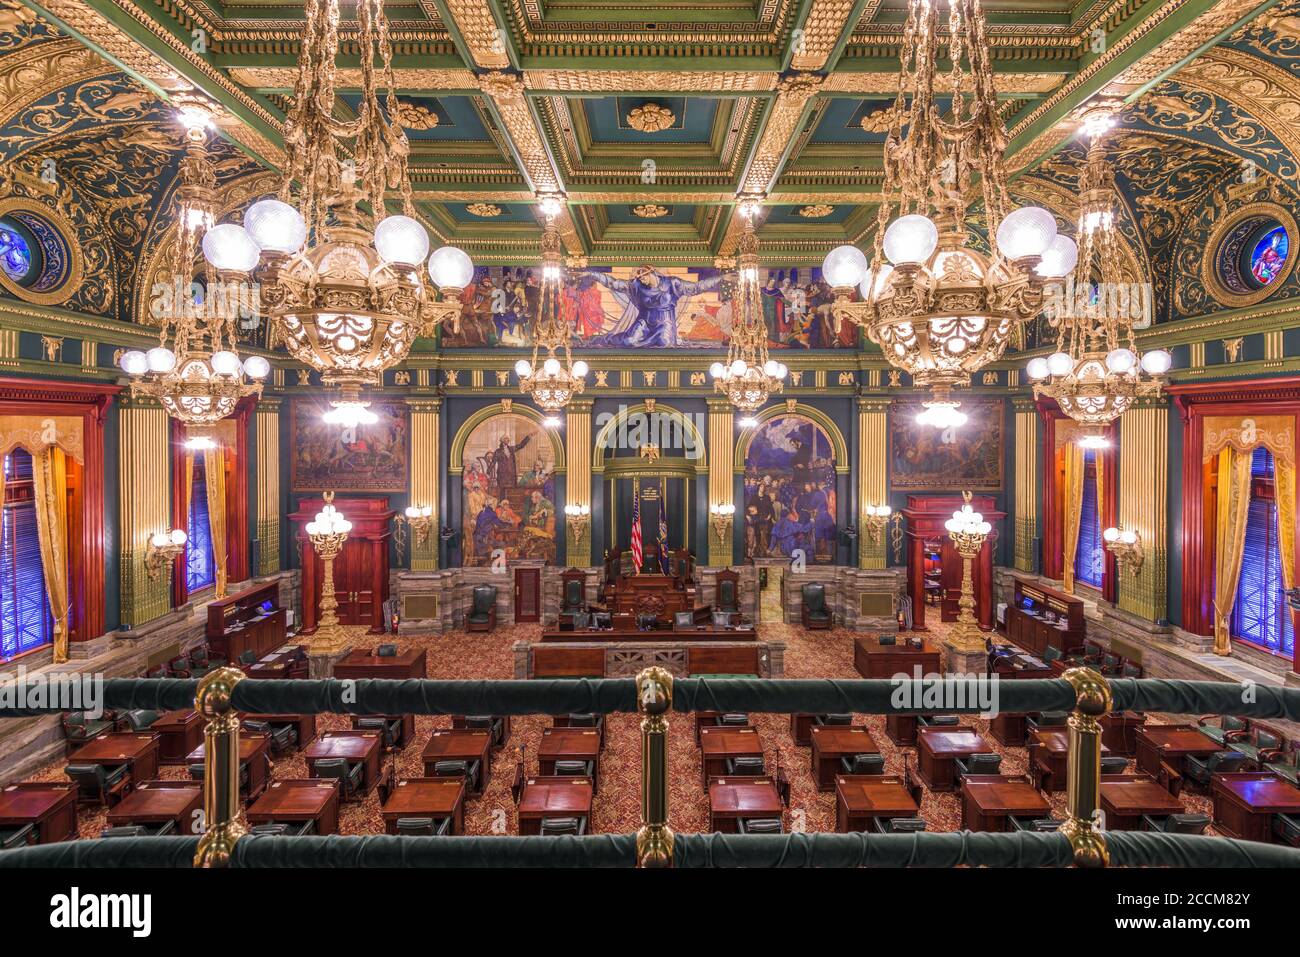 HARRISBURG, Pennsylvanie - 23 NOVEMBRE 2016 : la chambre de la Chambre des représentants de l'Utah State Capitol. Banque D'Images